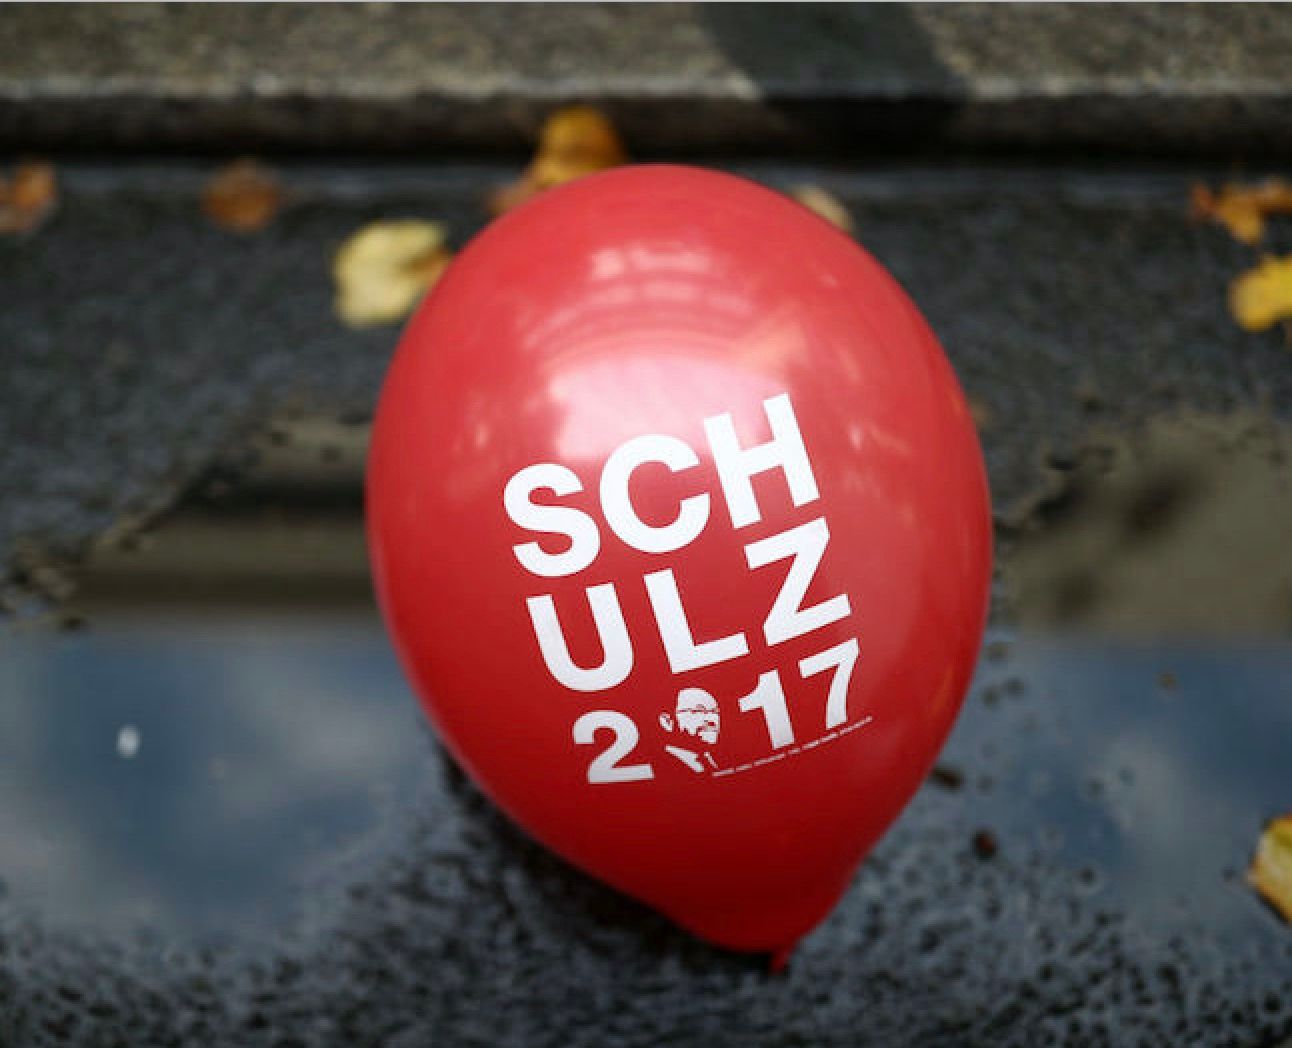 Martin Schulz og SPD blev de store tabere efter valget i Tyskland. Var deres værdipolitiske program for tyndt?